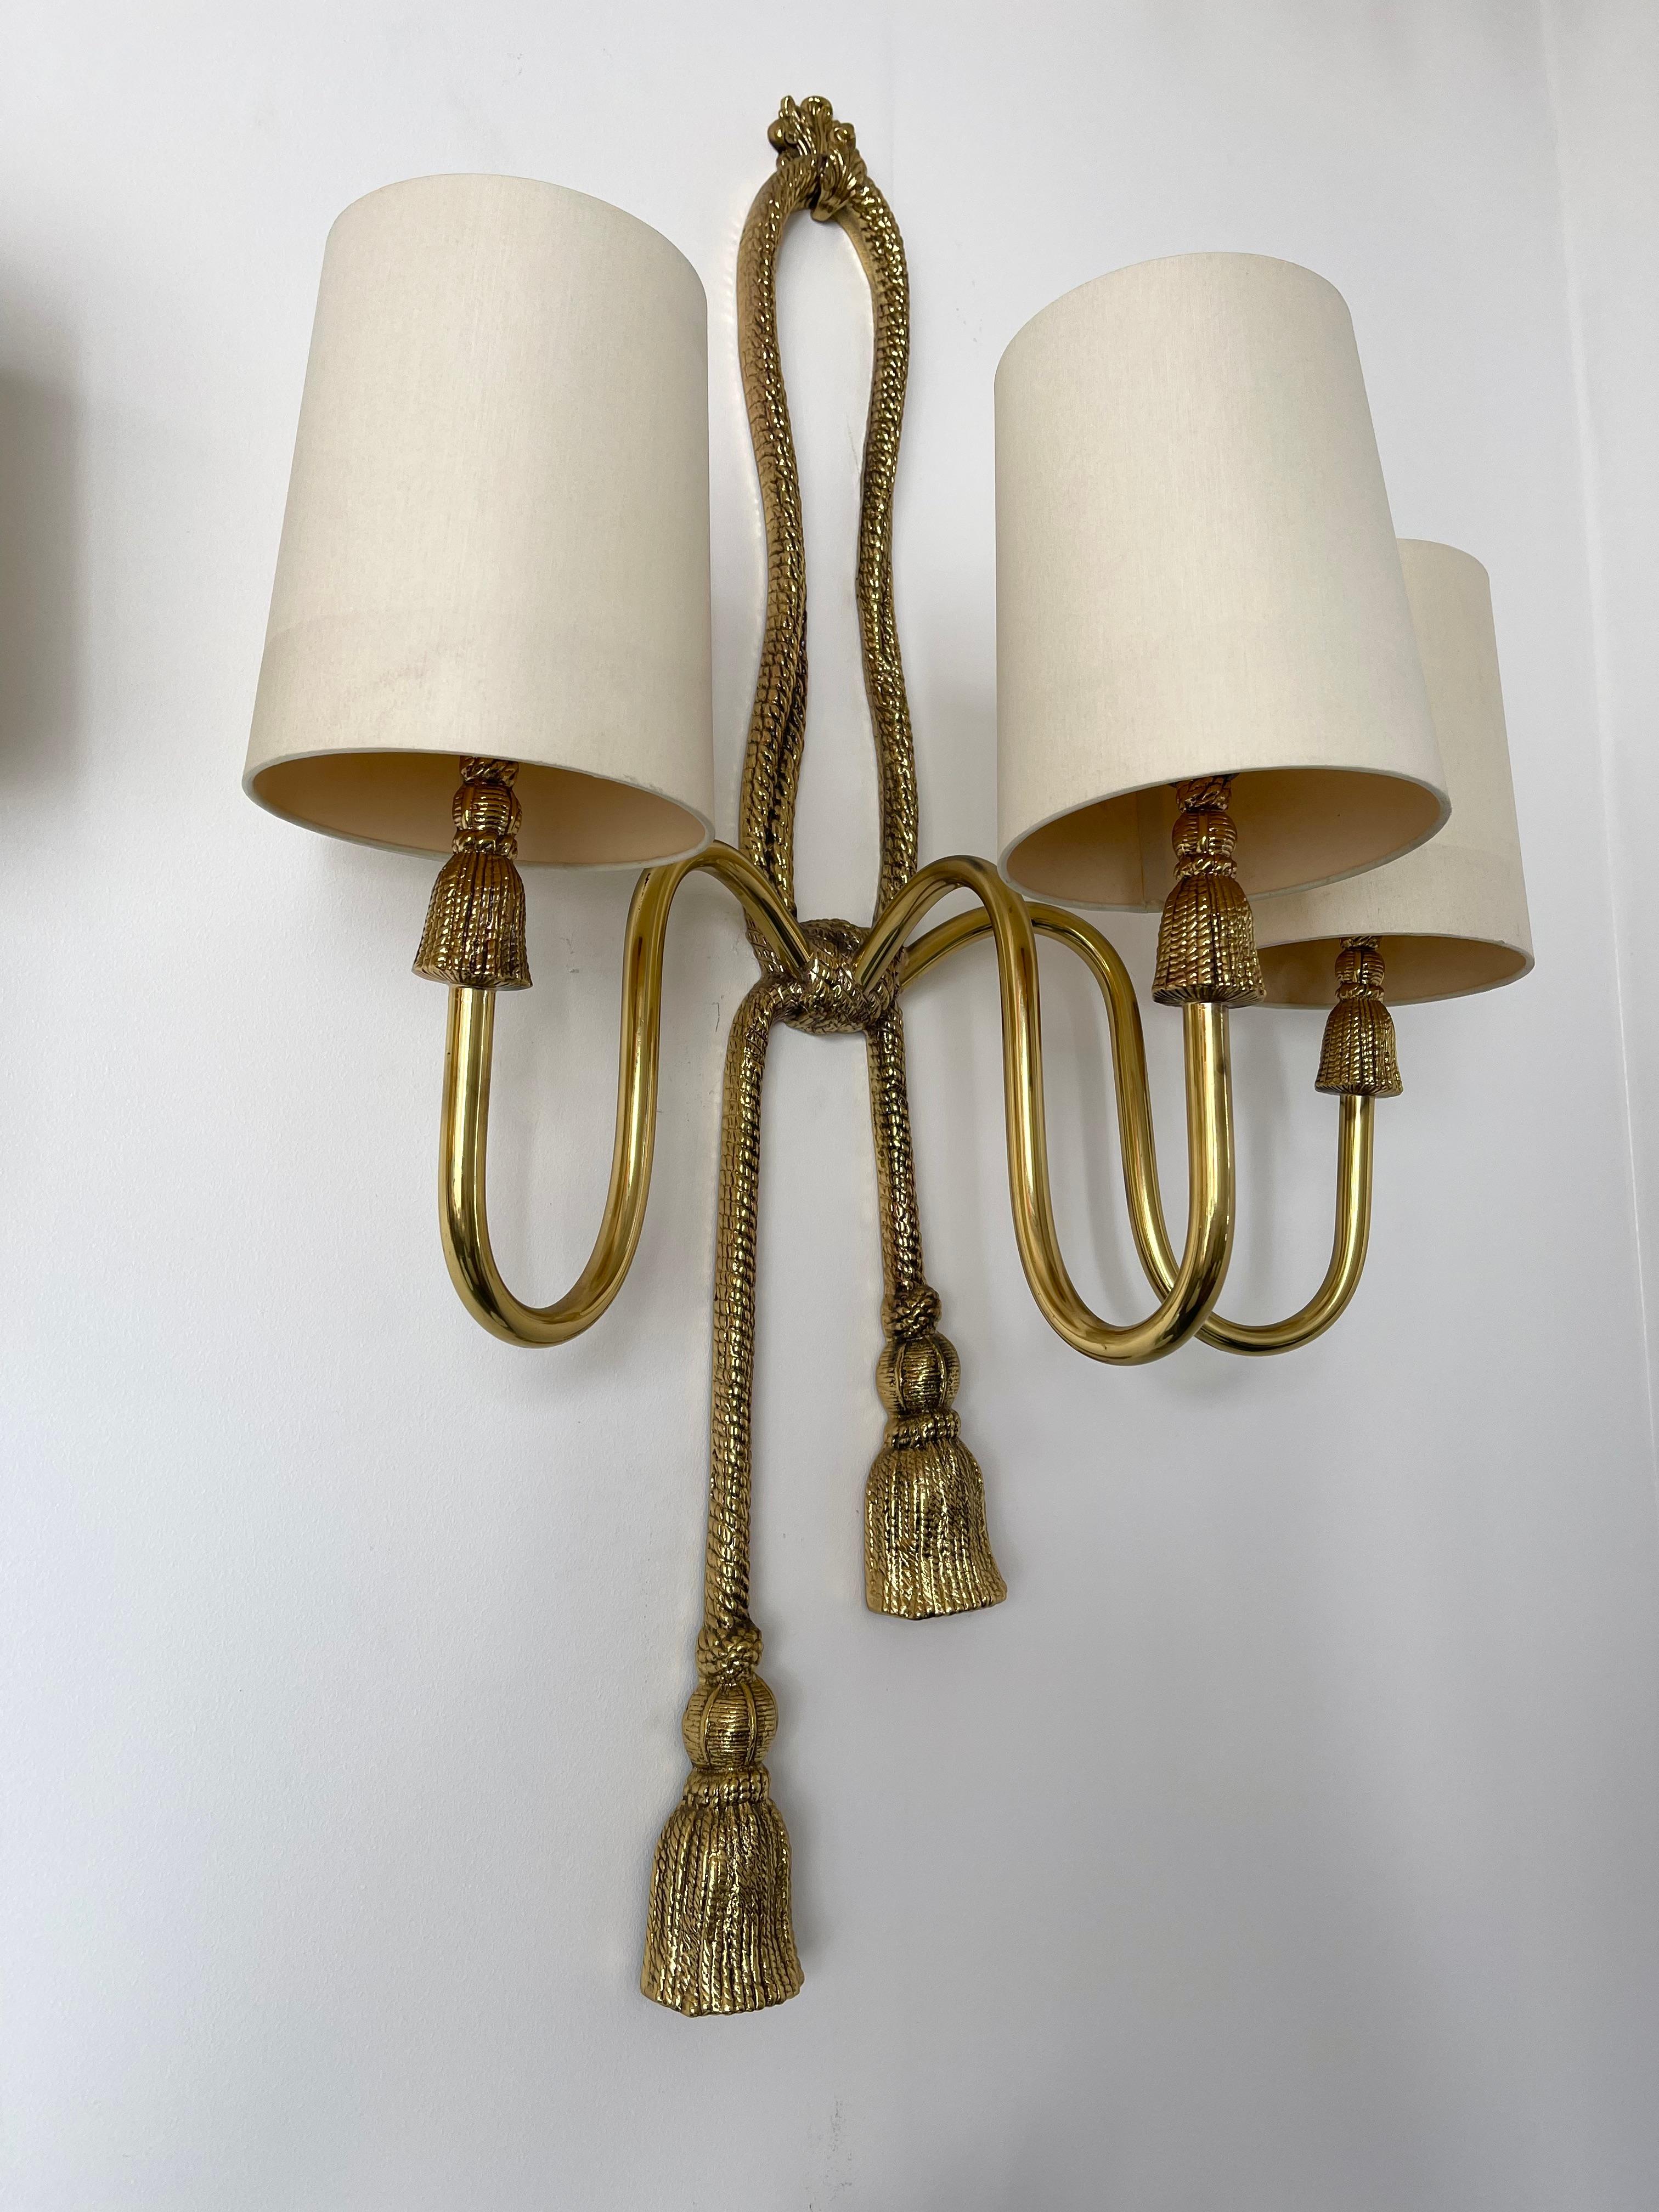 Seltene große 3 Lichter neoklassischen Bronze und Messing Knoten Knoten Wandleuchten Lampen Beleuchtung Wandleuchten von der Herstellung Valenti. Die Wandleuchten werden mit NEUEN elfenbeinfarbenen Baumwollschirmen geliefert, die den